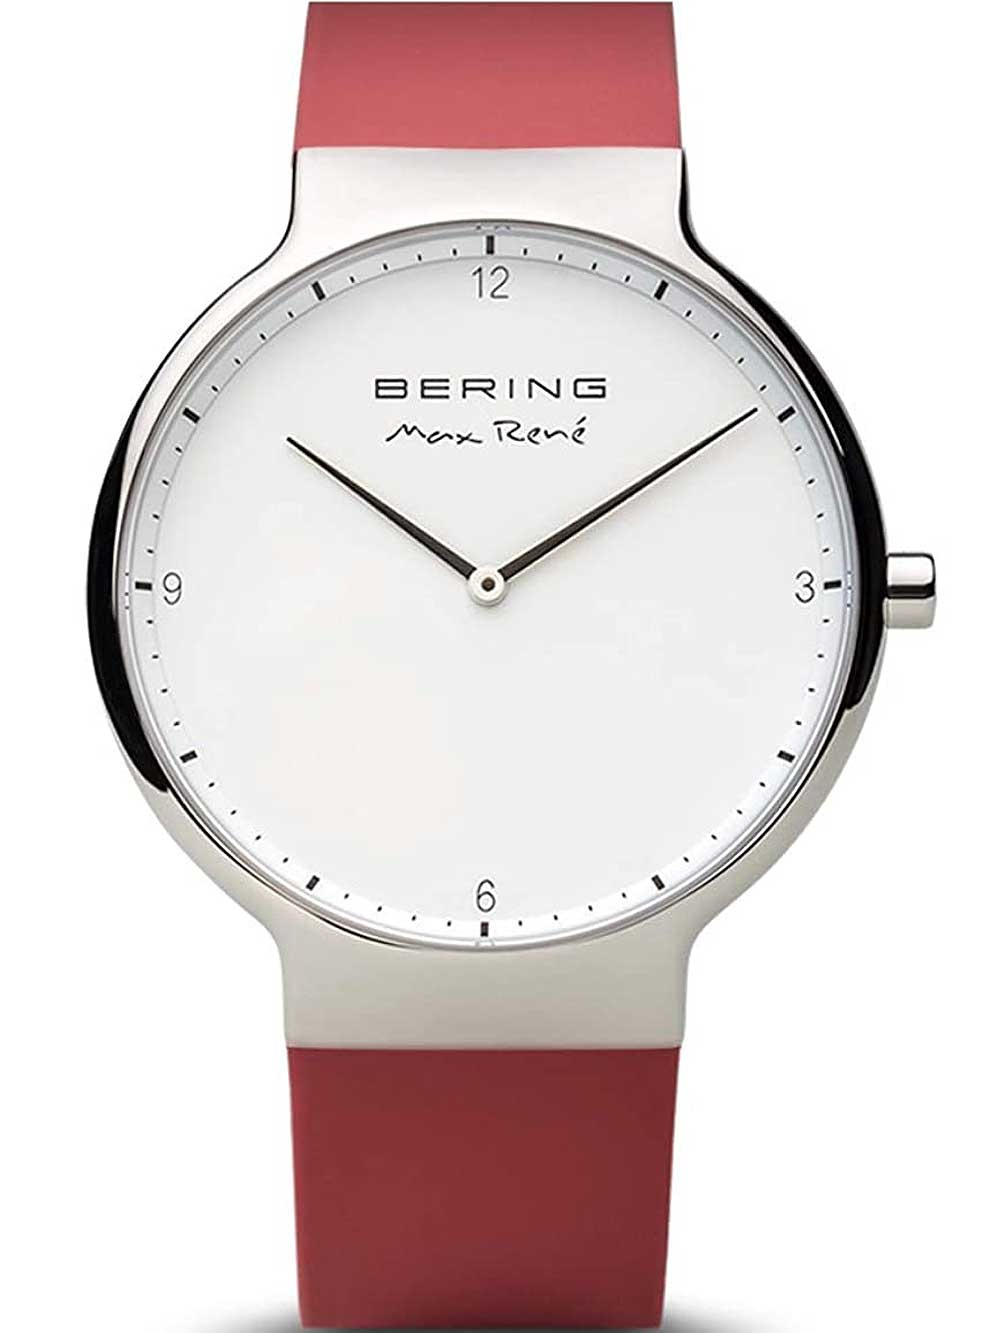 Pánské hodinky Bering 15540-500 Max René